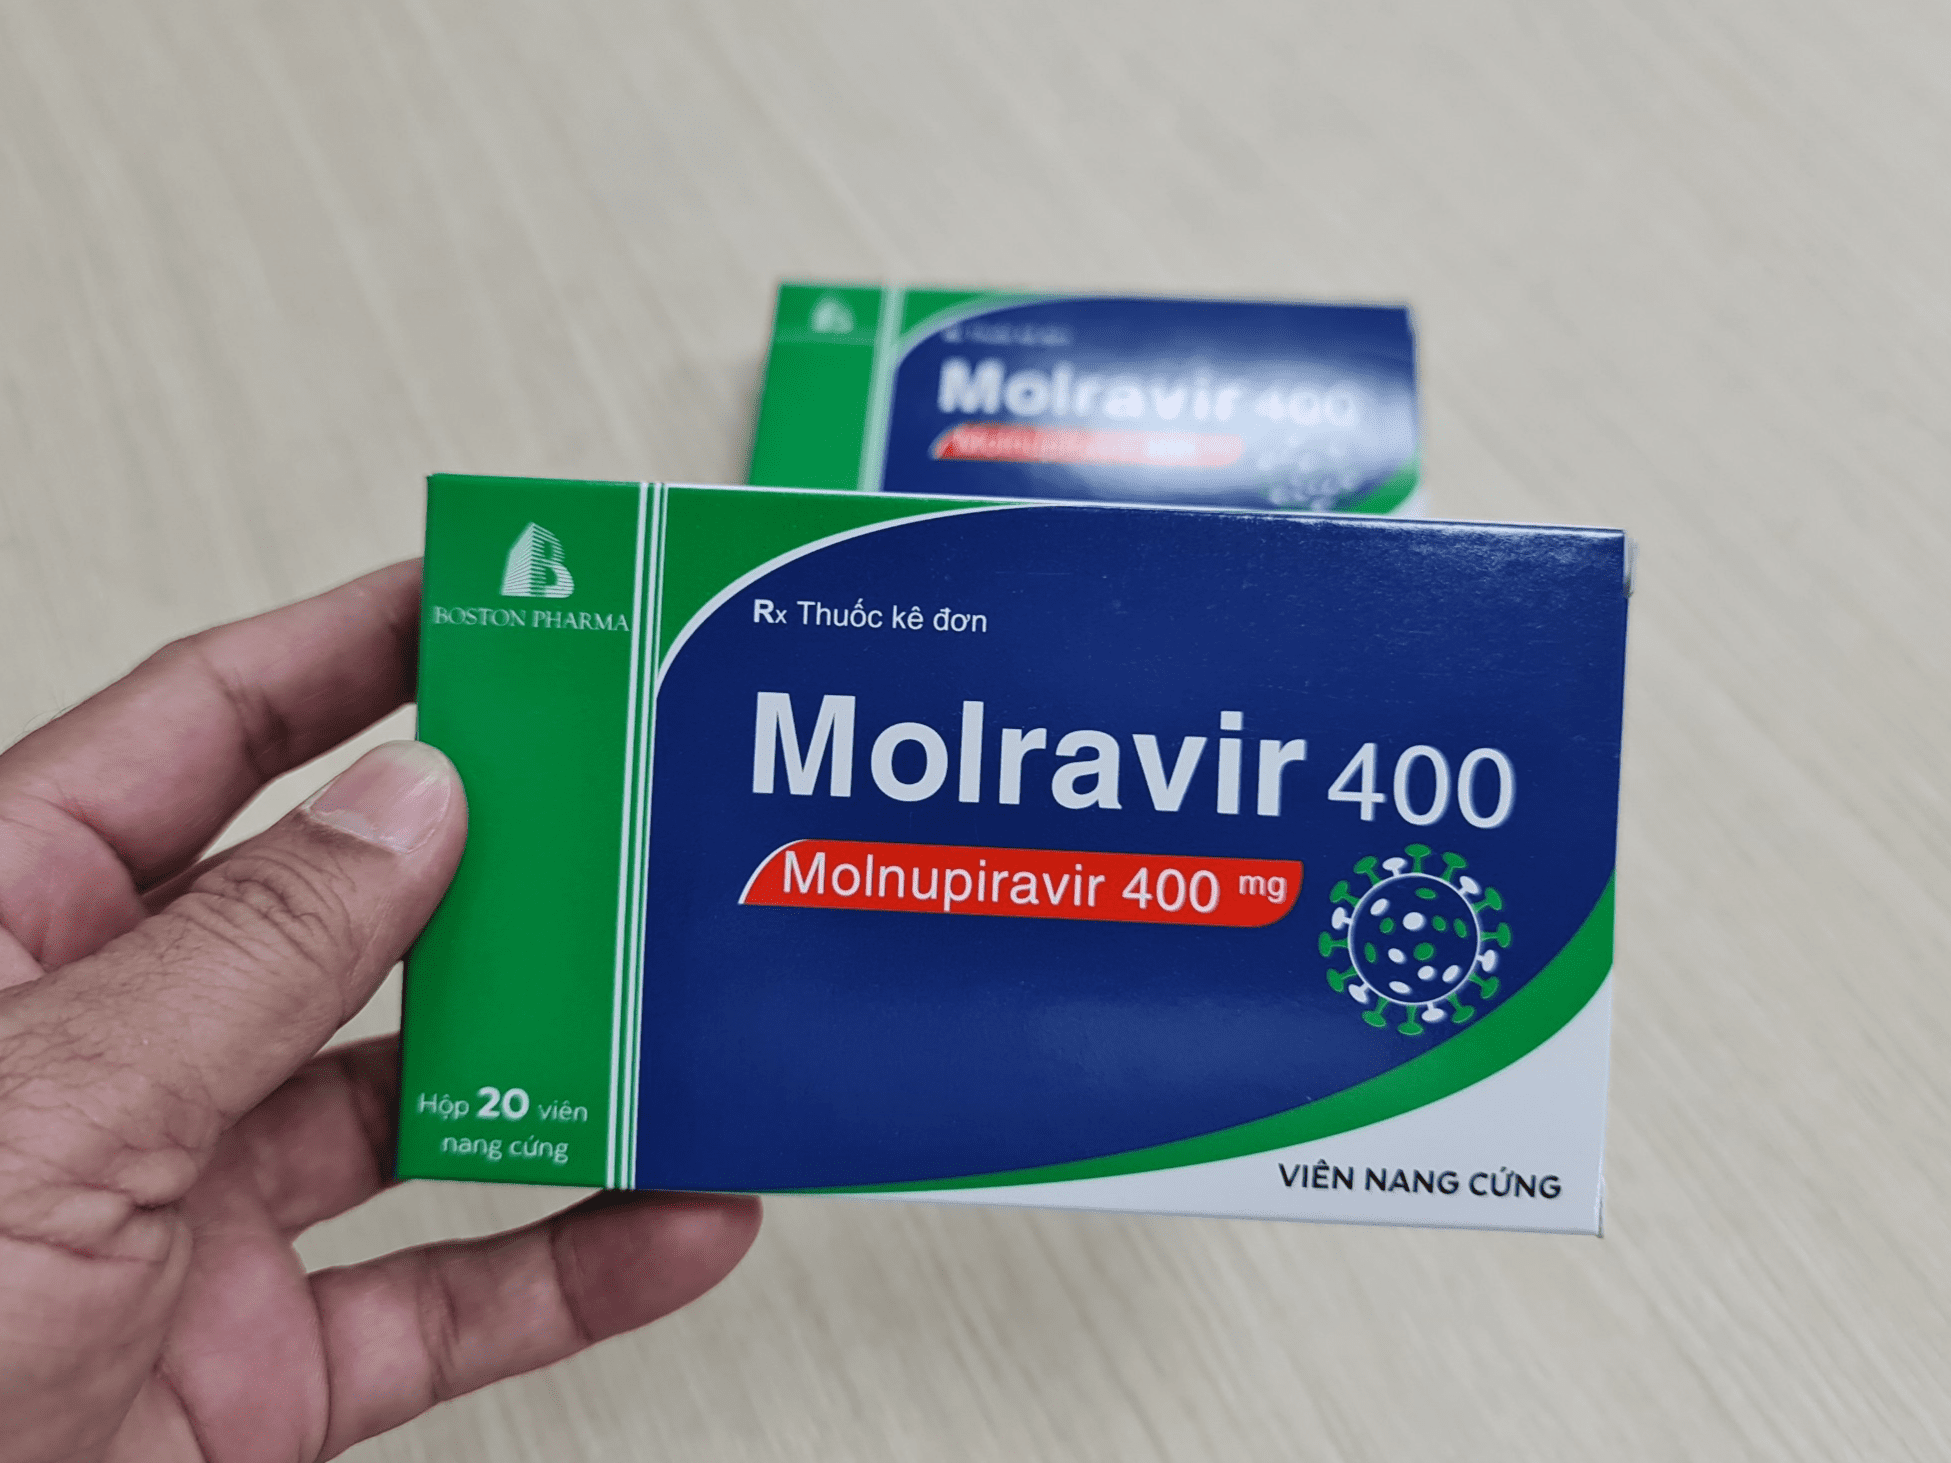 Trường hợp nào không được sử dụng thuốc Molnupiravir? - ảnh 1